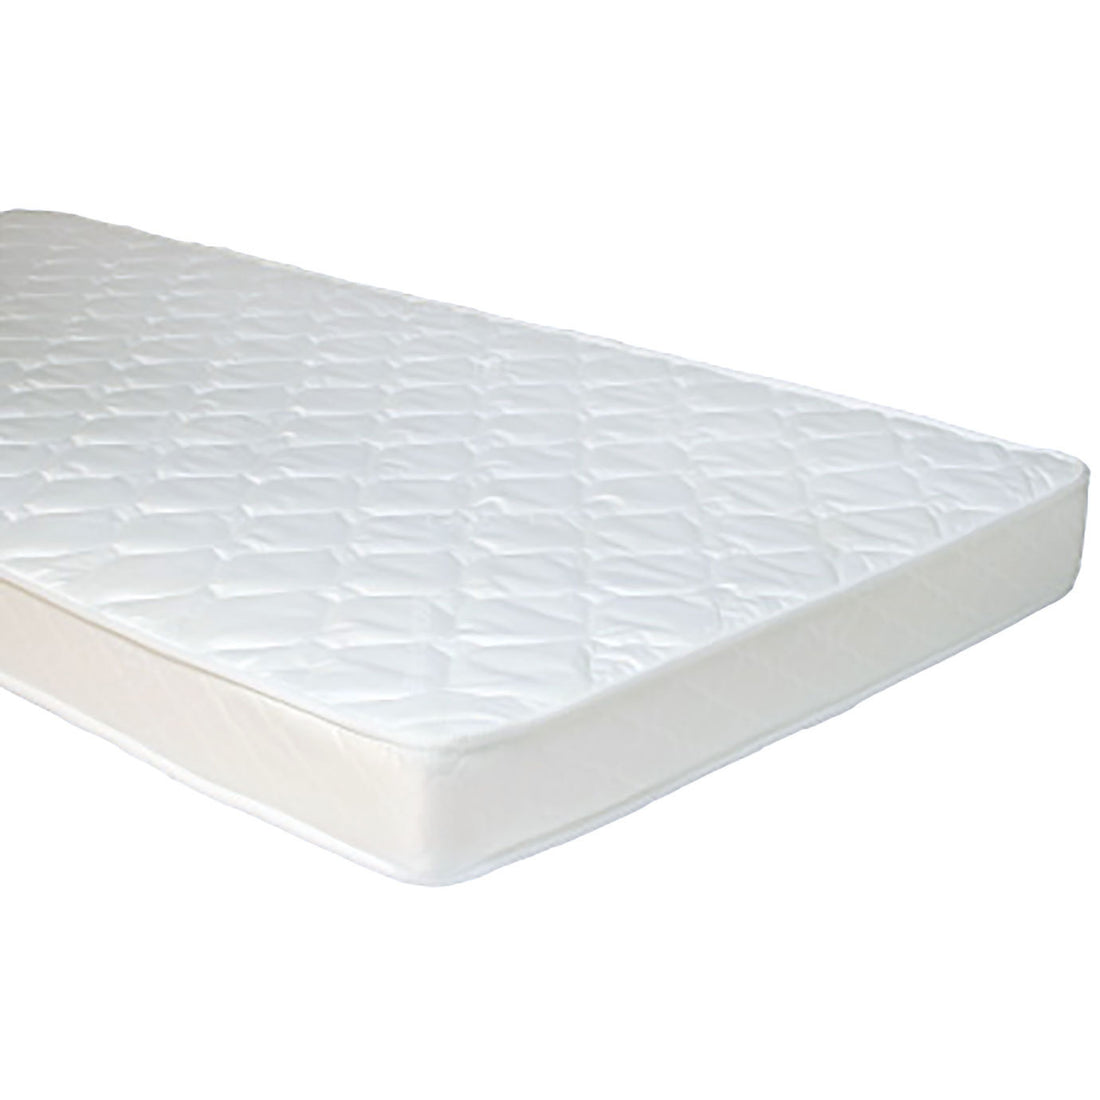 quax-mattress-cot-drawer-1